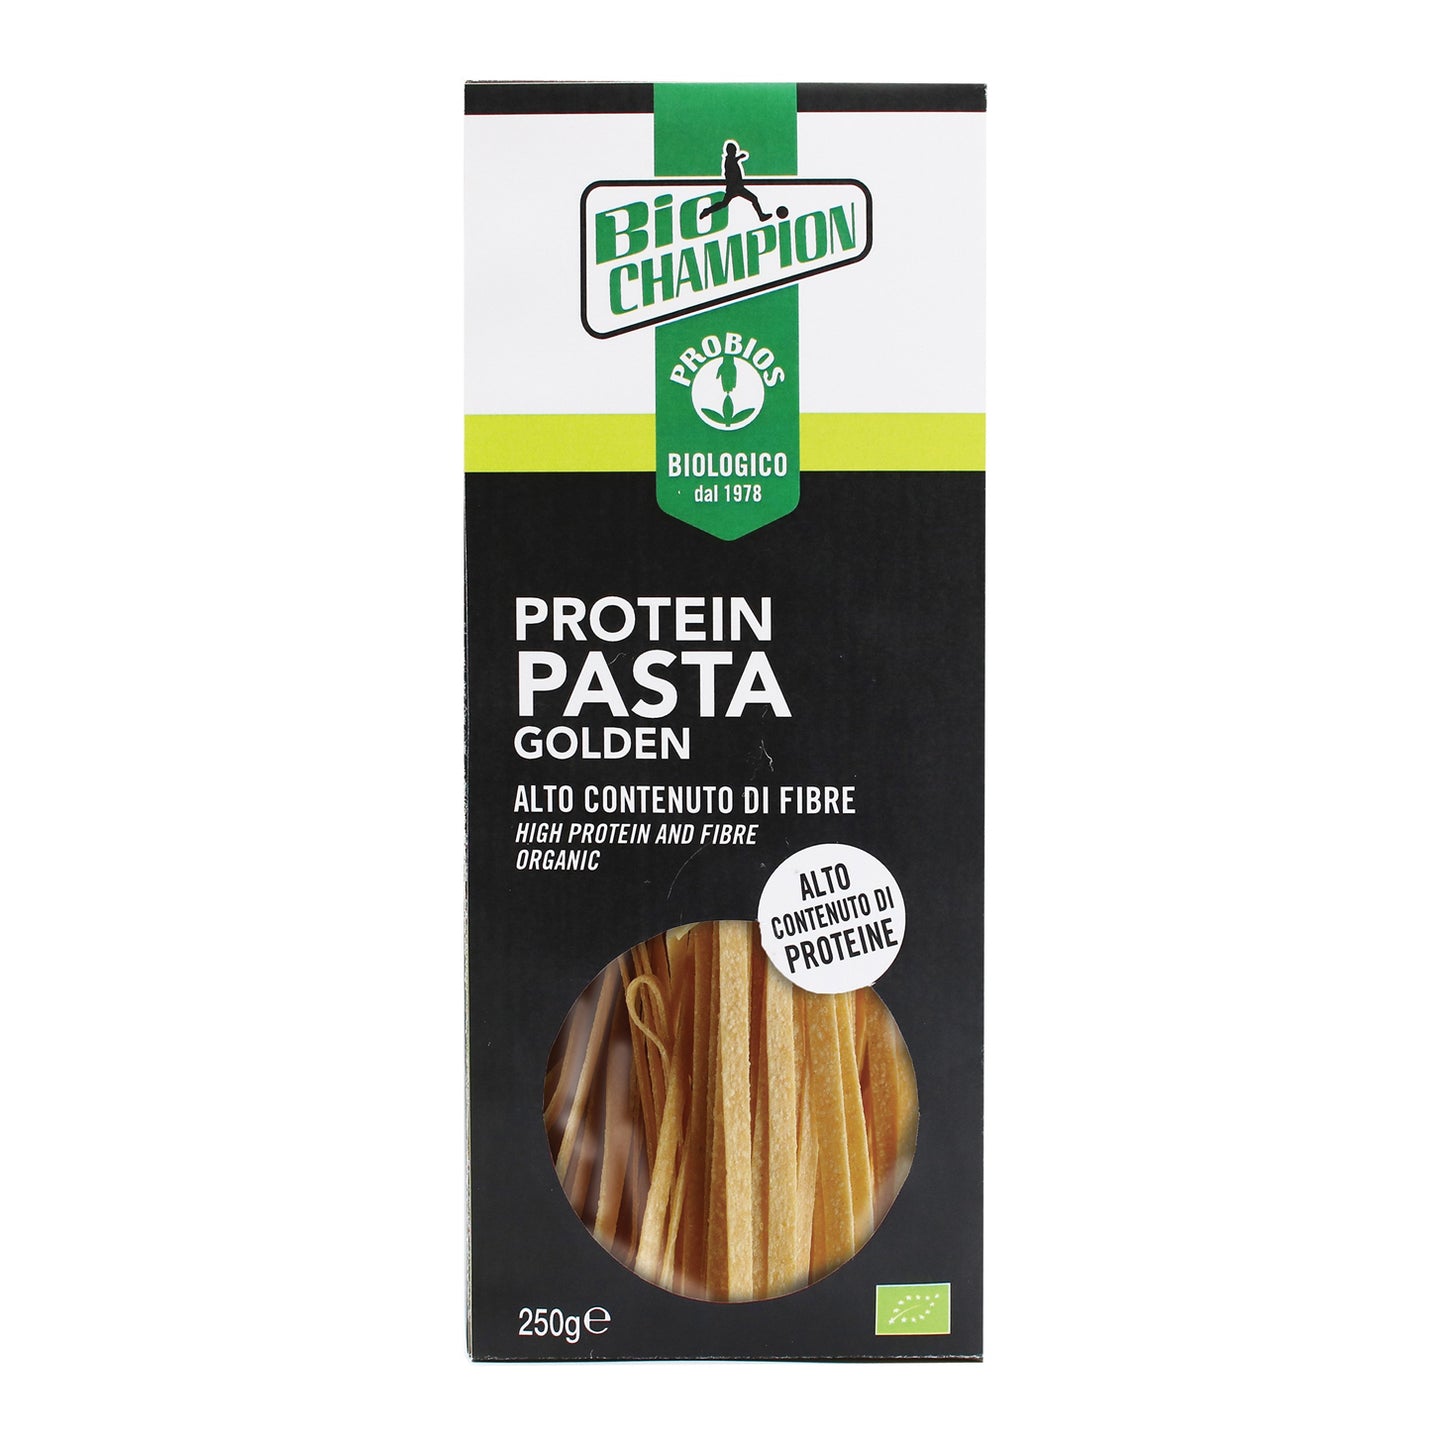 Protein Pasta Golden 250g